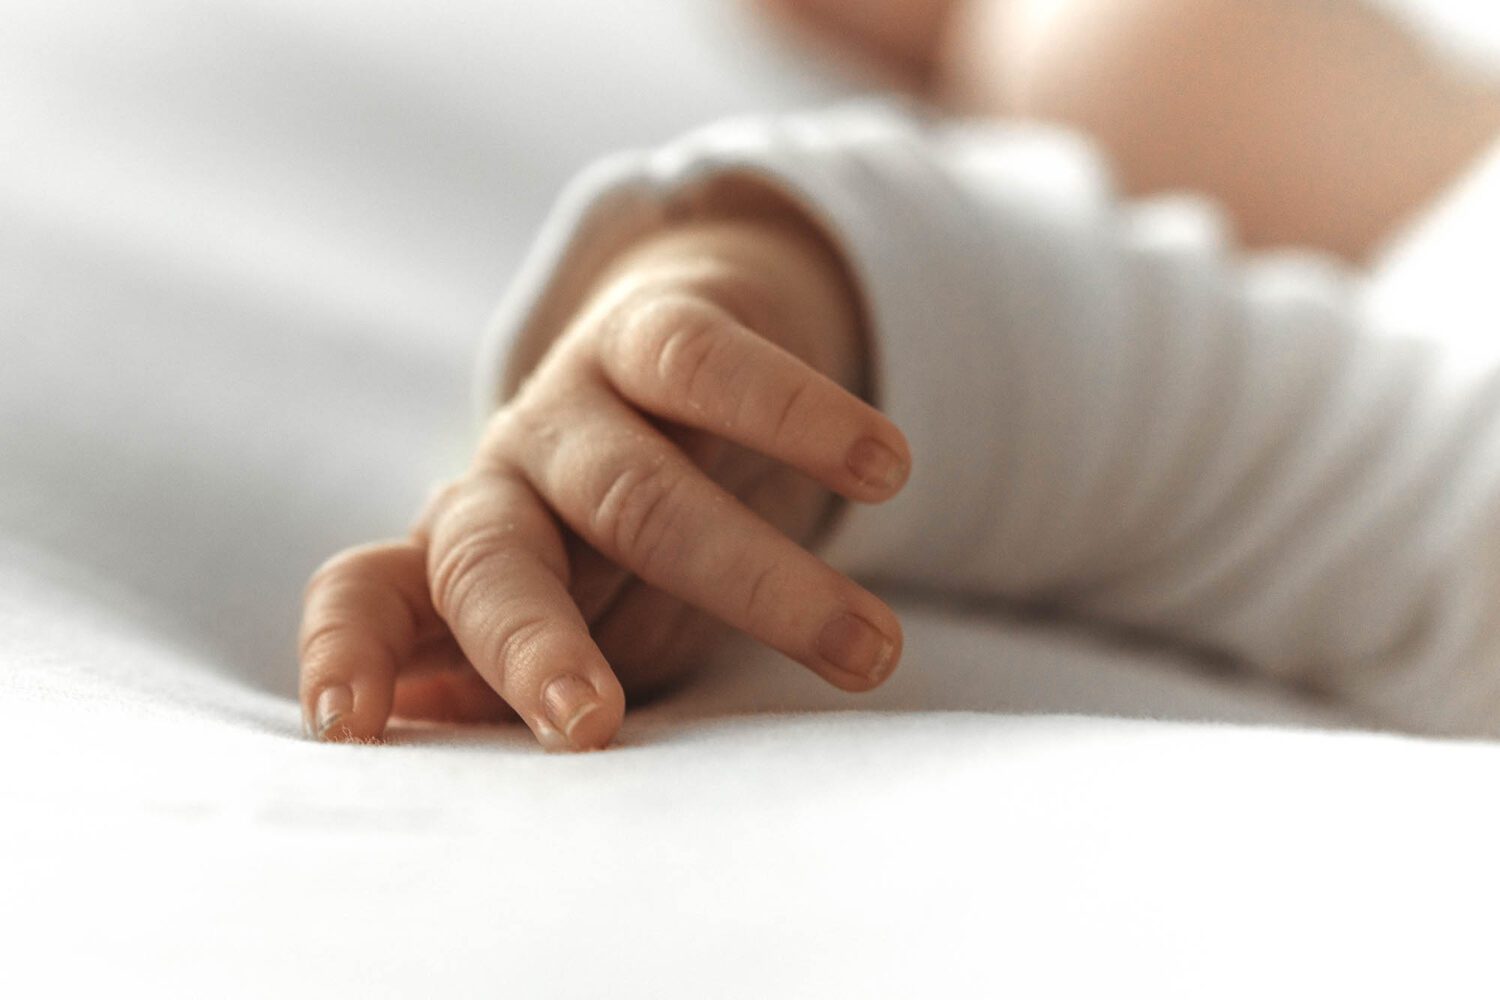 Nahaufnahme von einer Babyhand, man sieht sehr schön die Fingernägel des neugeborenen Babies